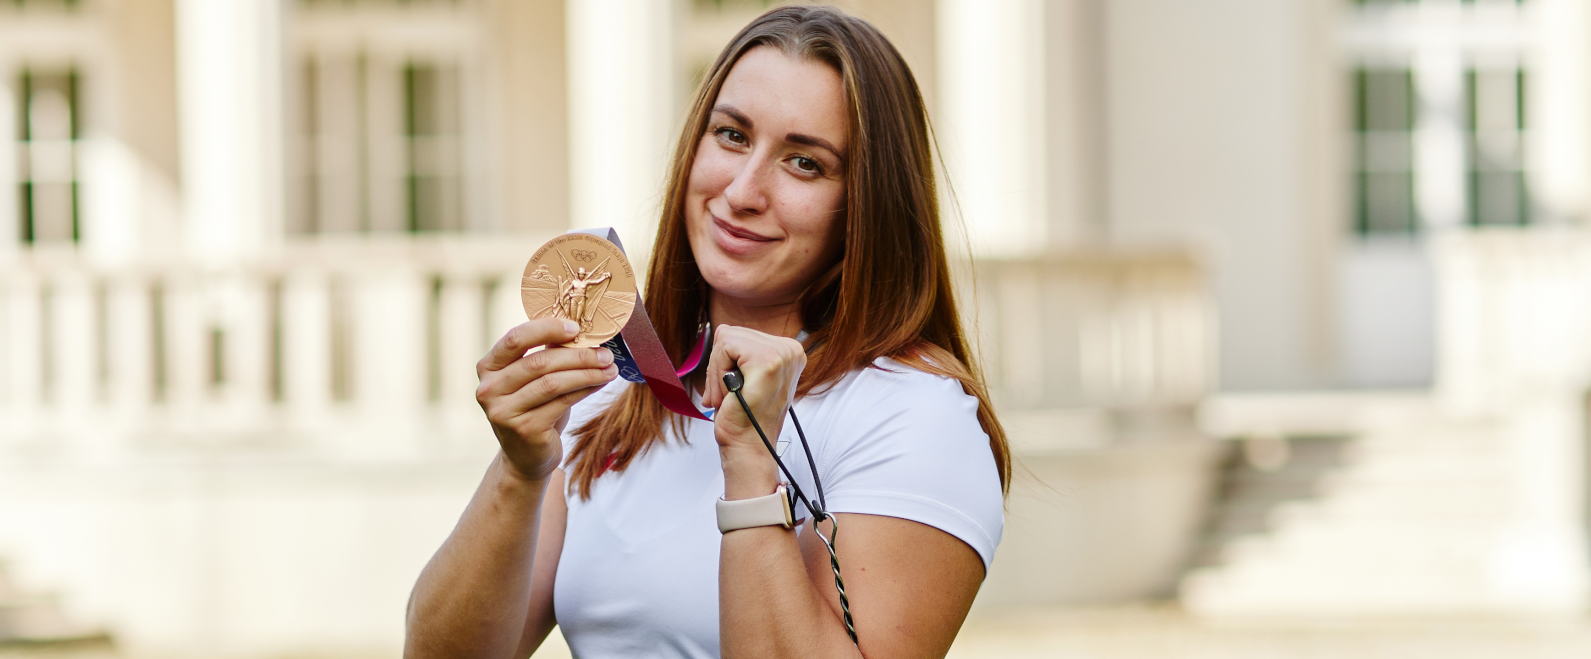 Malwina Kopron brązową medalistką Igrzysk Olimpijskich w Tokio!